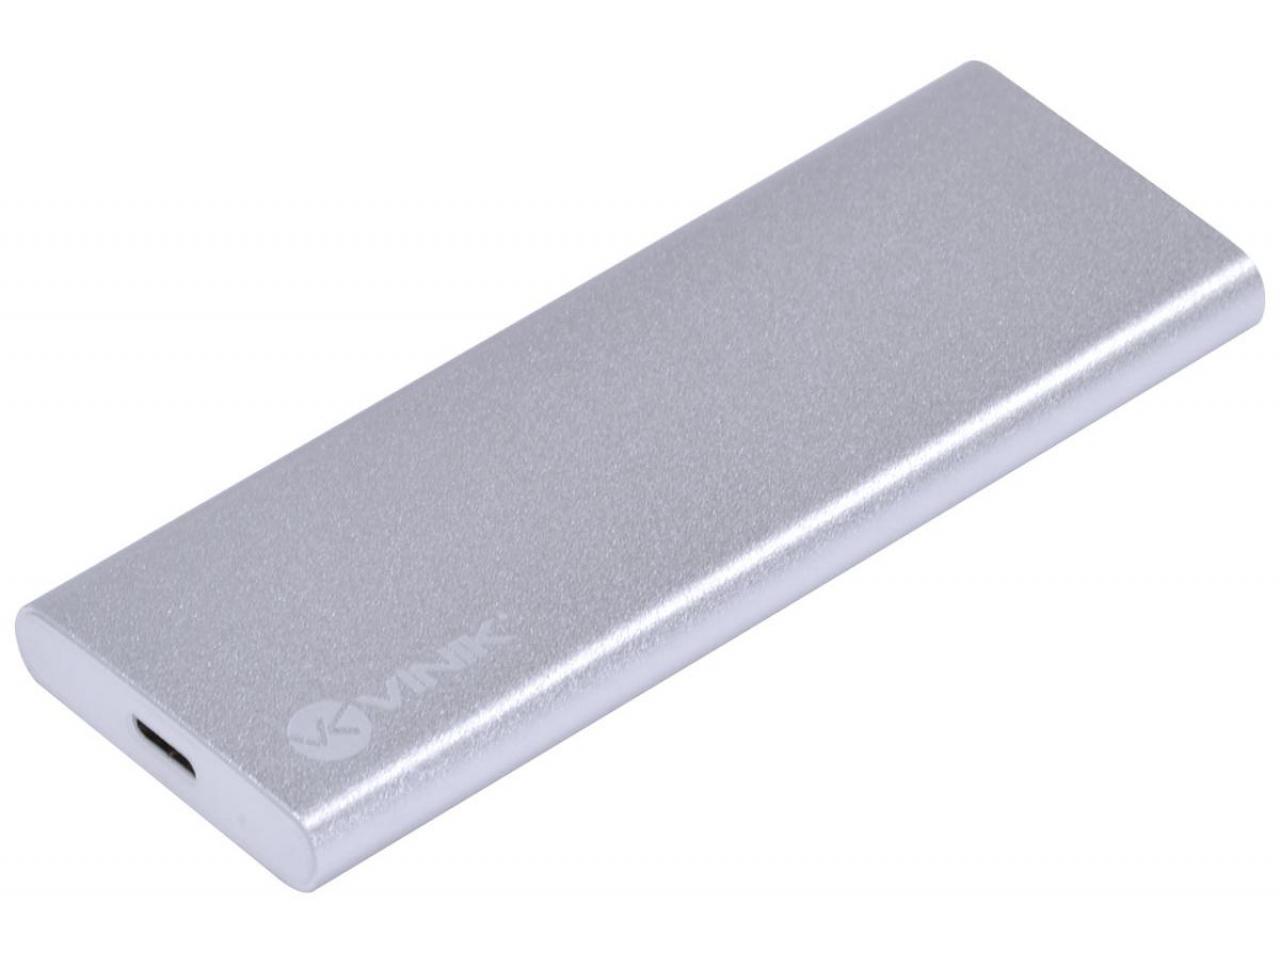 Case SSD M.2 USB 3.0 - Vinik 